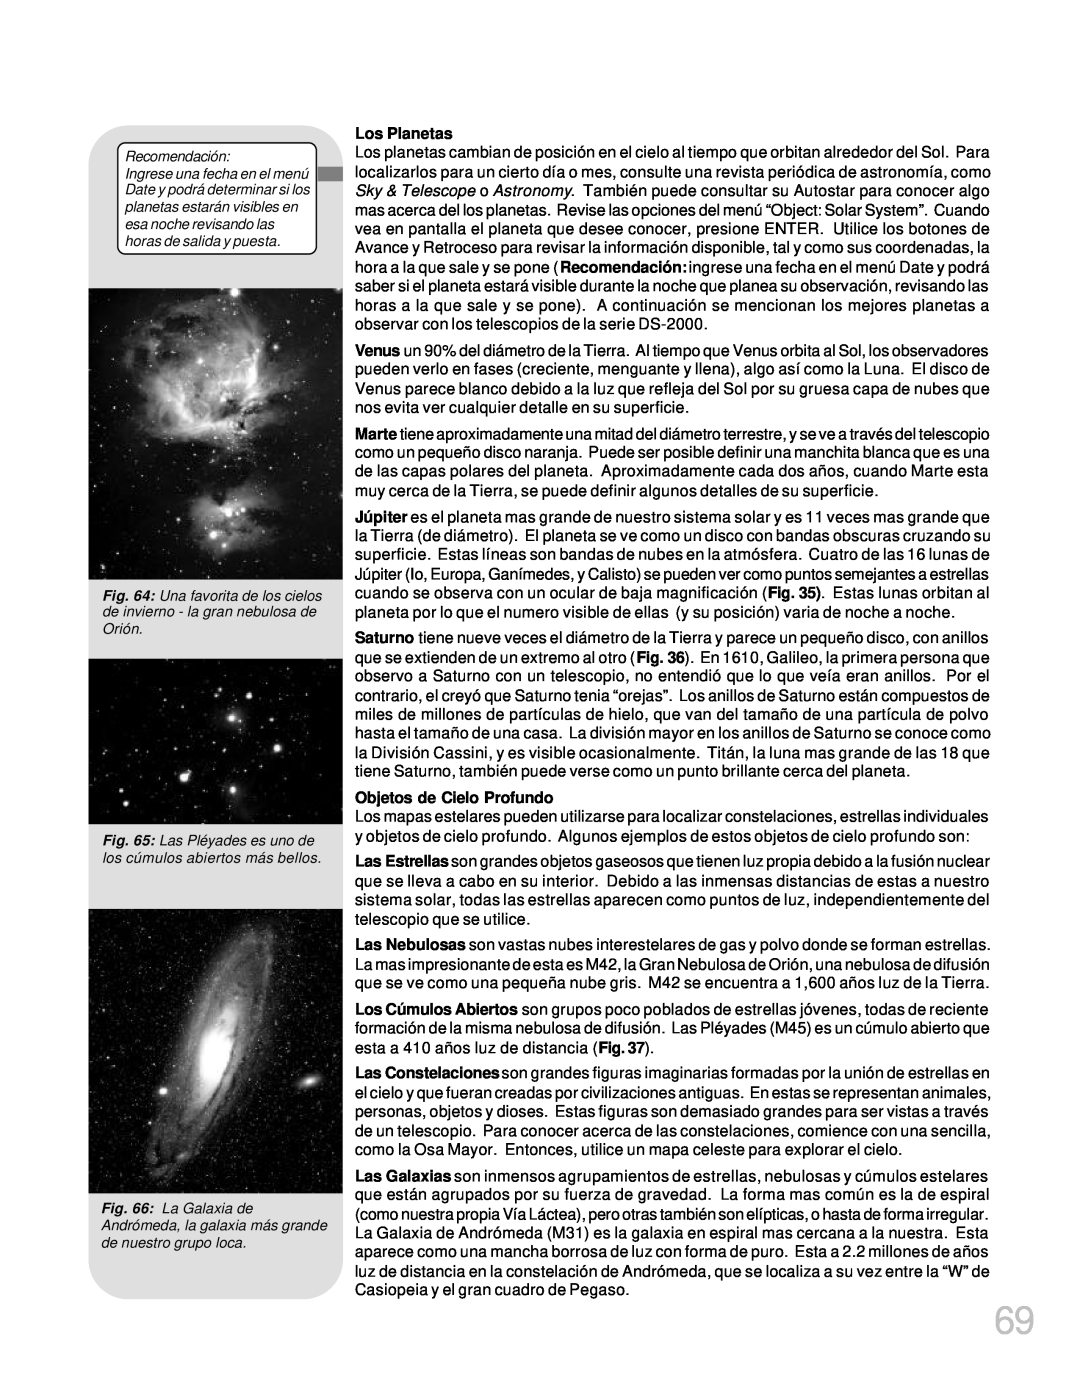 Meade LX200GPS manual Los Planetas, Objetos de Cielo Profundo 